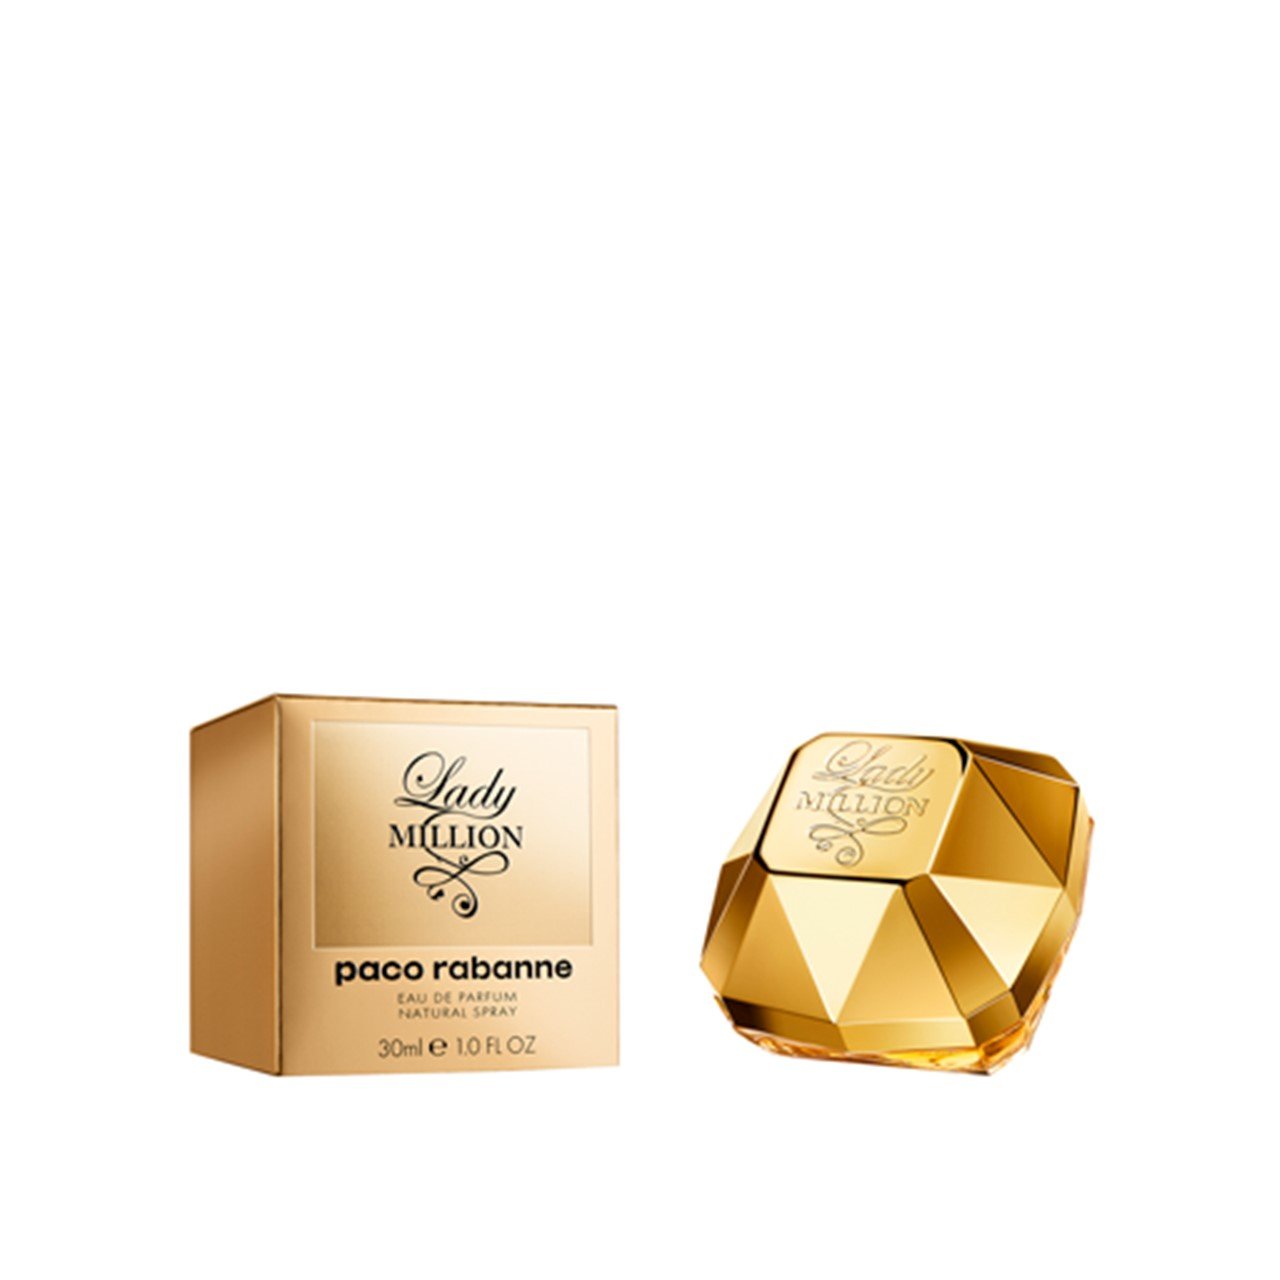 Paco Rabanne Lady Million Eau de Parfum 30ml (1.0fl oz)